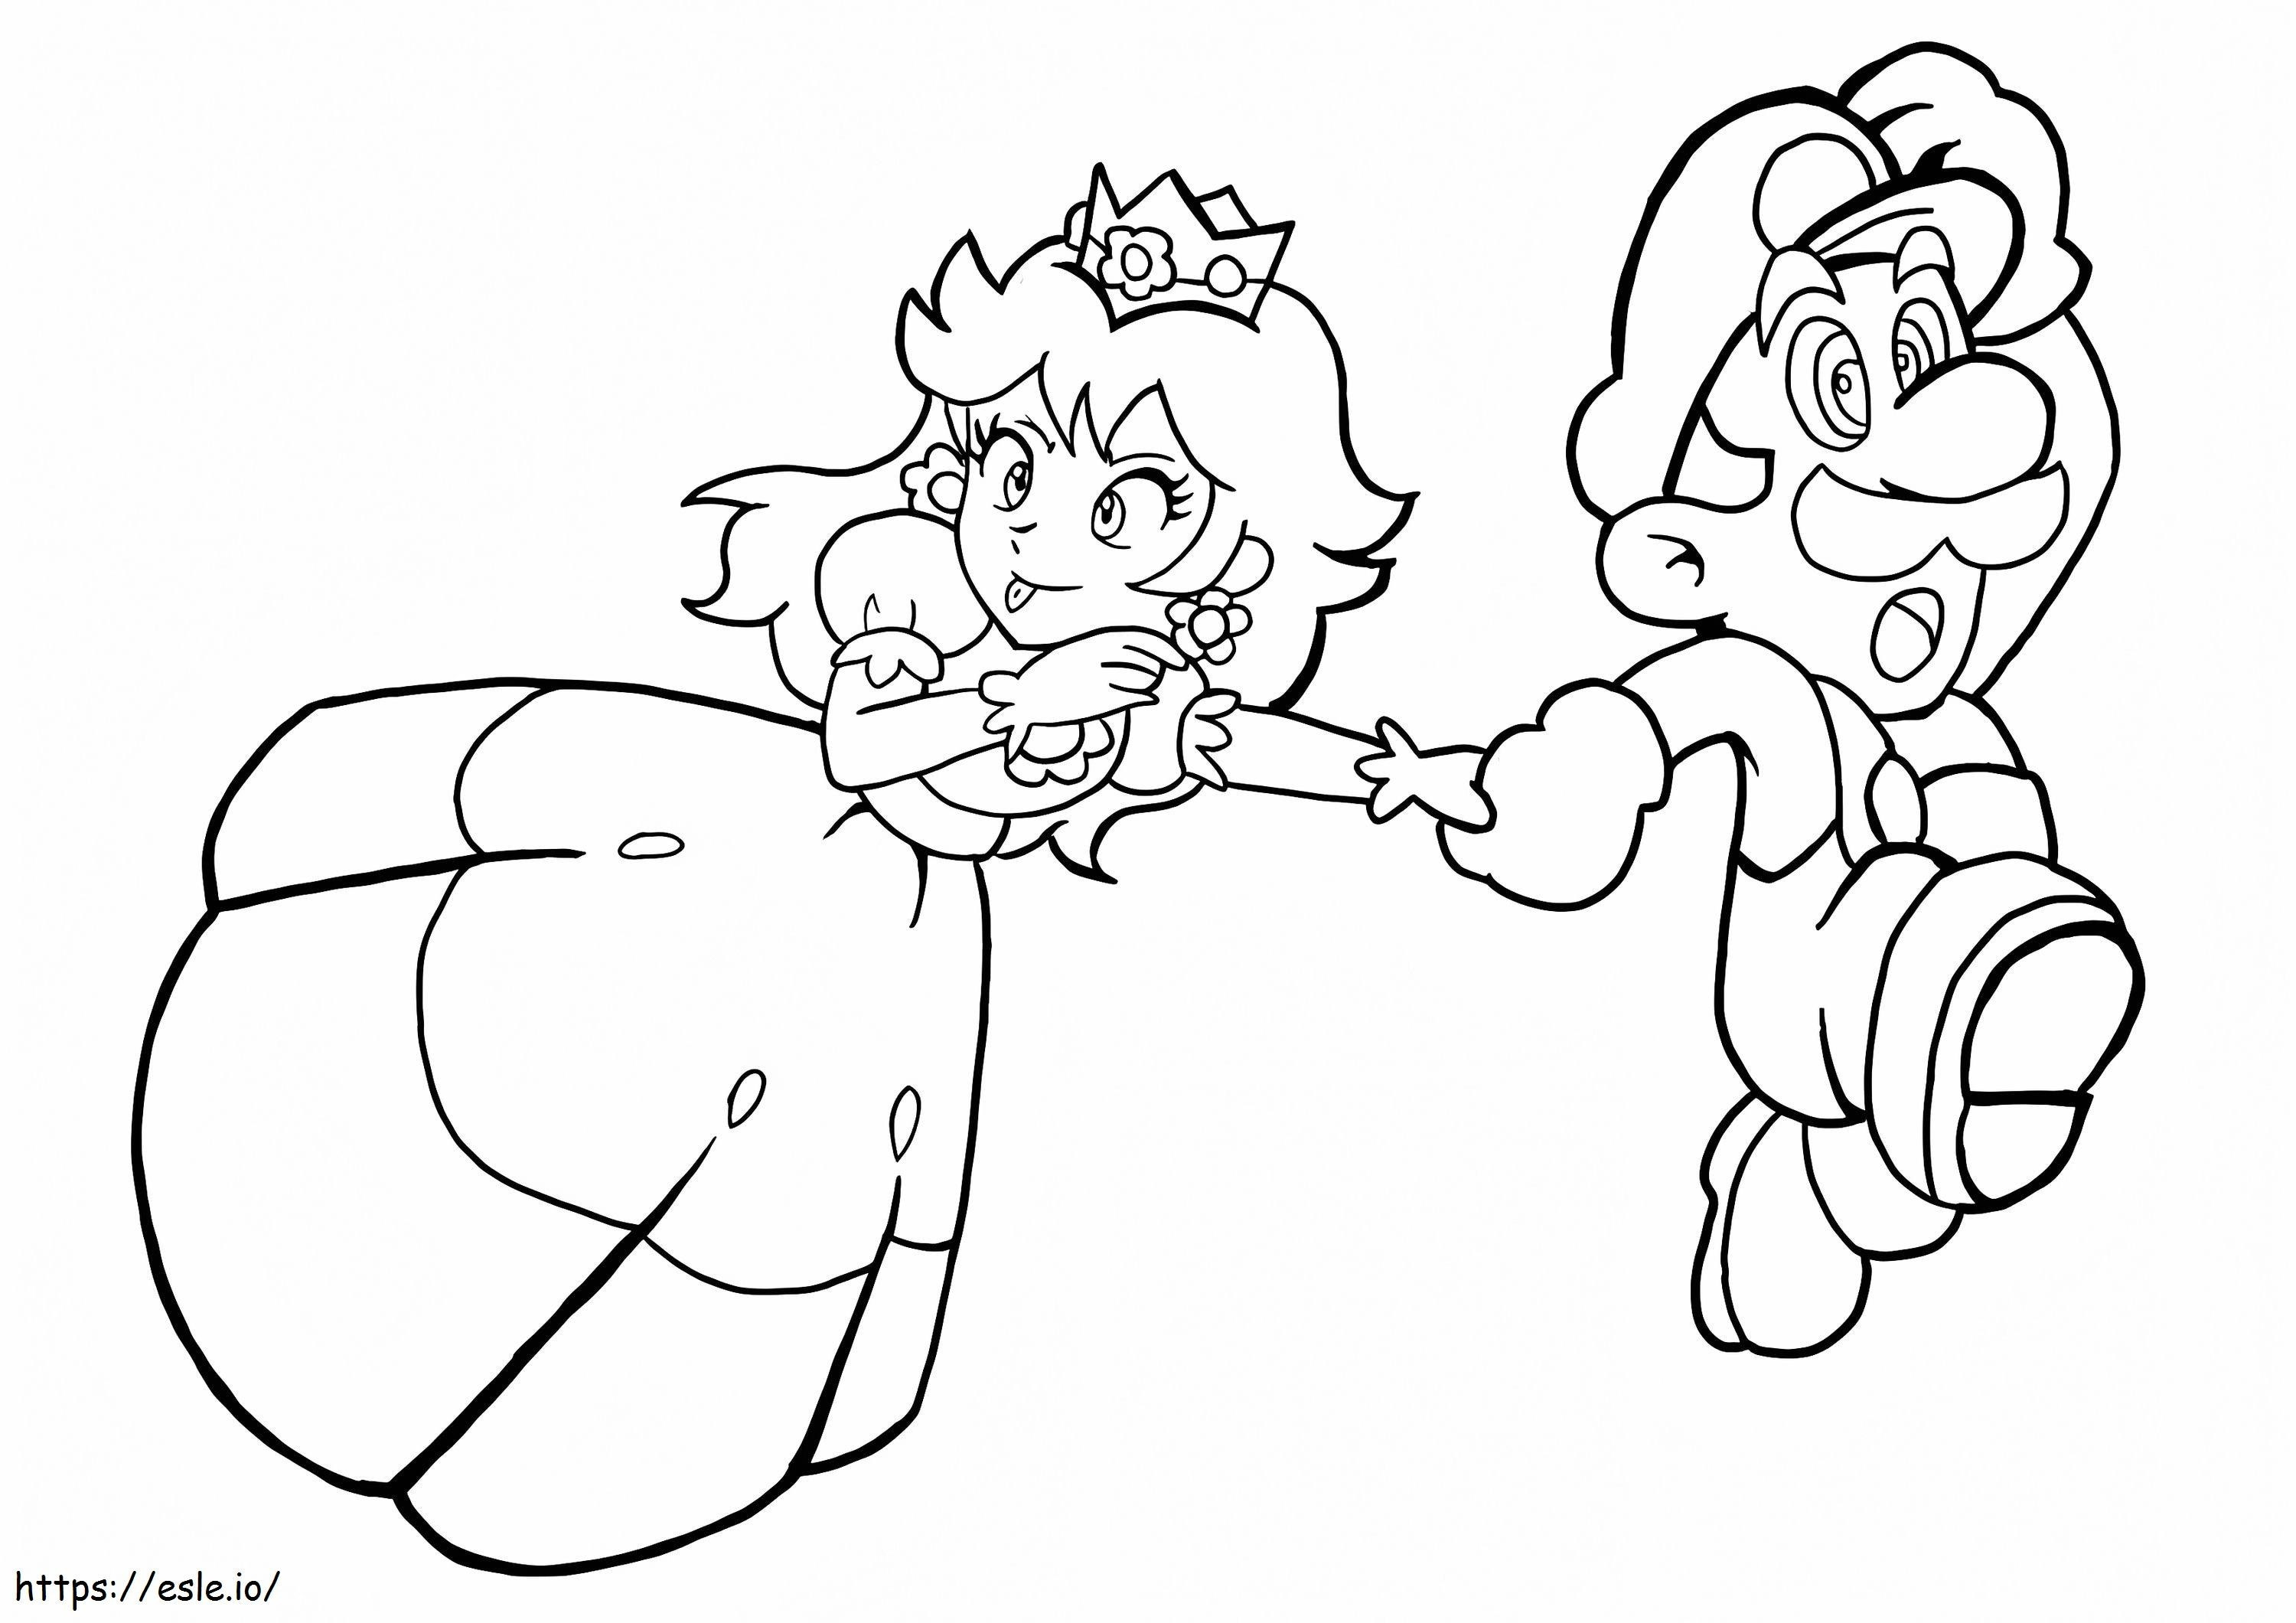 Eğlenceli Prenses Şeftali ve Mario Koşuyor boyama